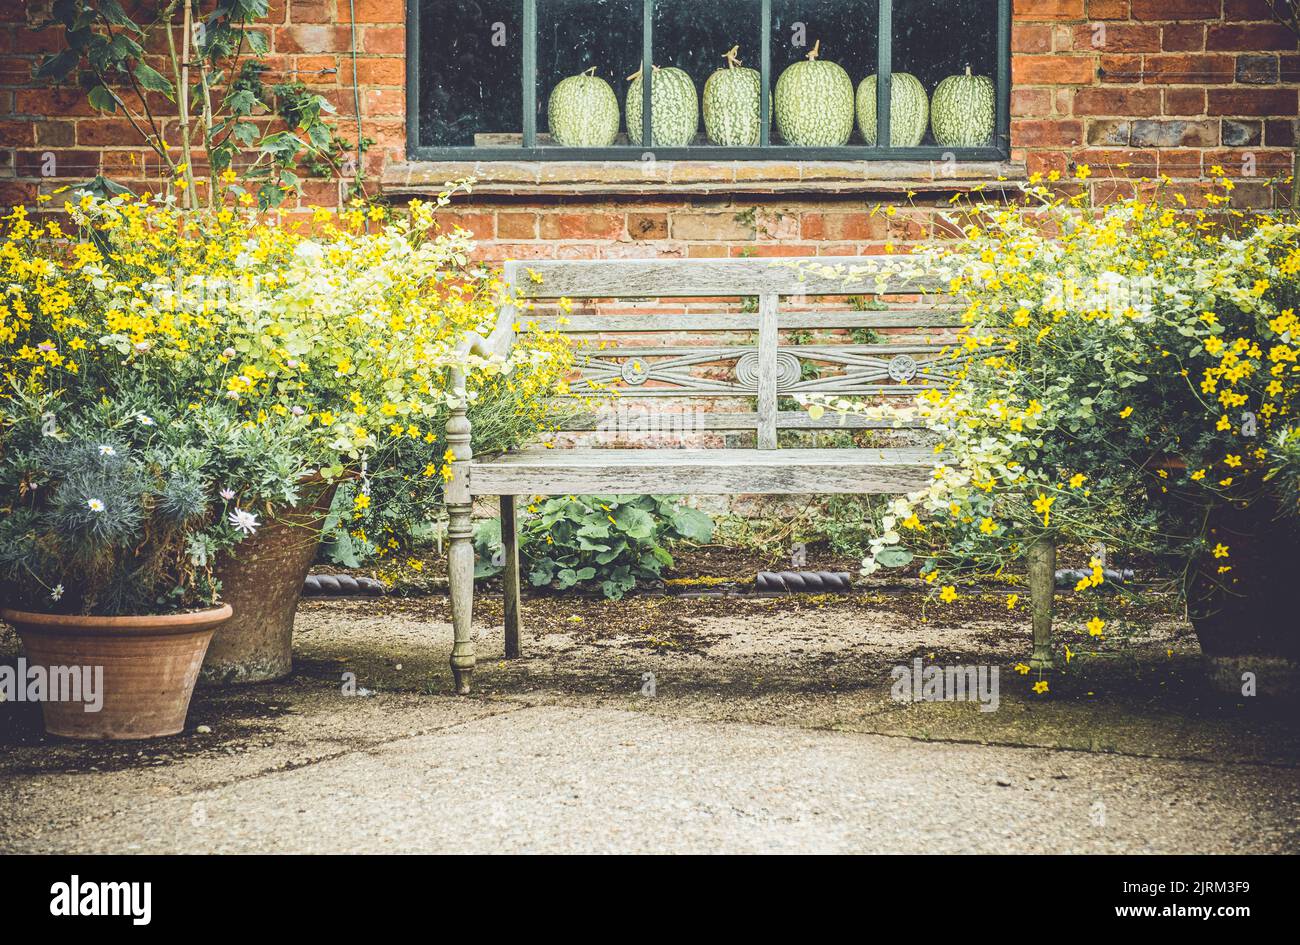 L'eau de saison se fond dans une fenêtre en forme de bestiole à Eythrope Gardens, sur le domaine de Waddesdon Manor. Banque D'Images